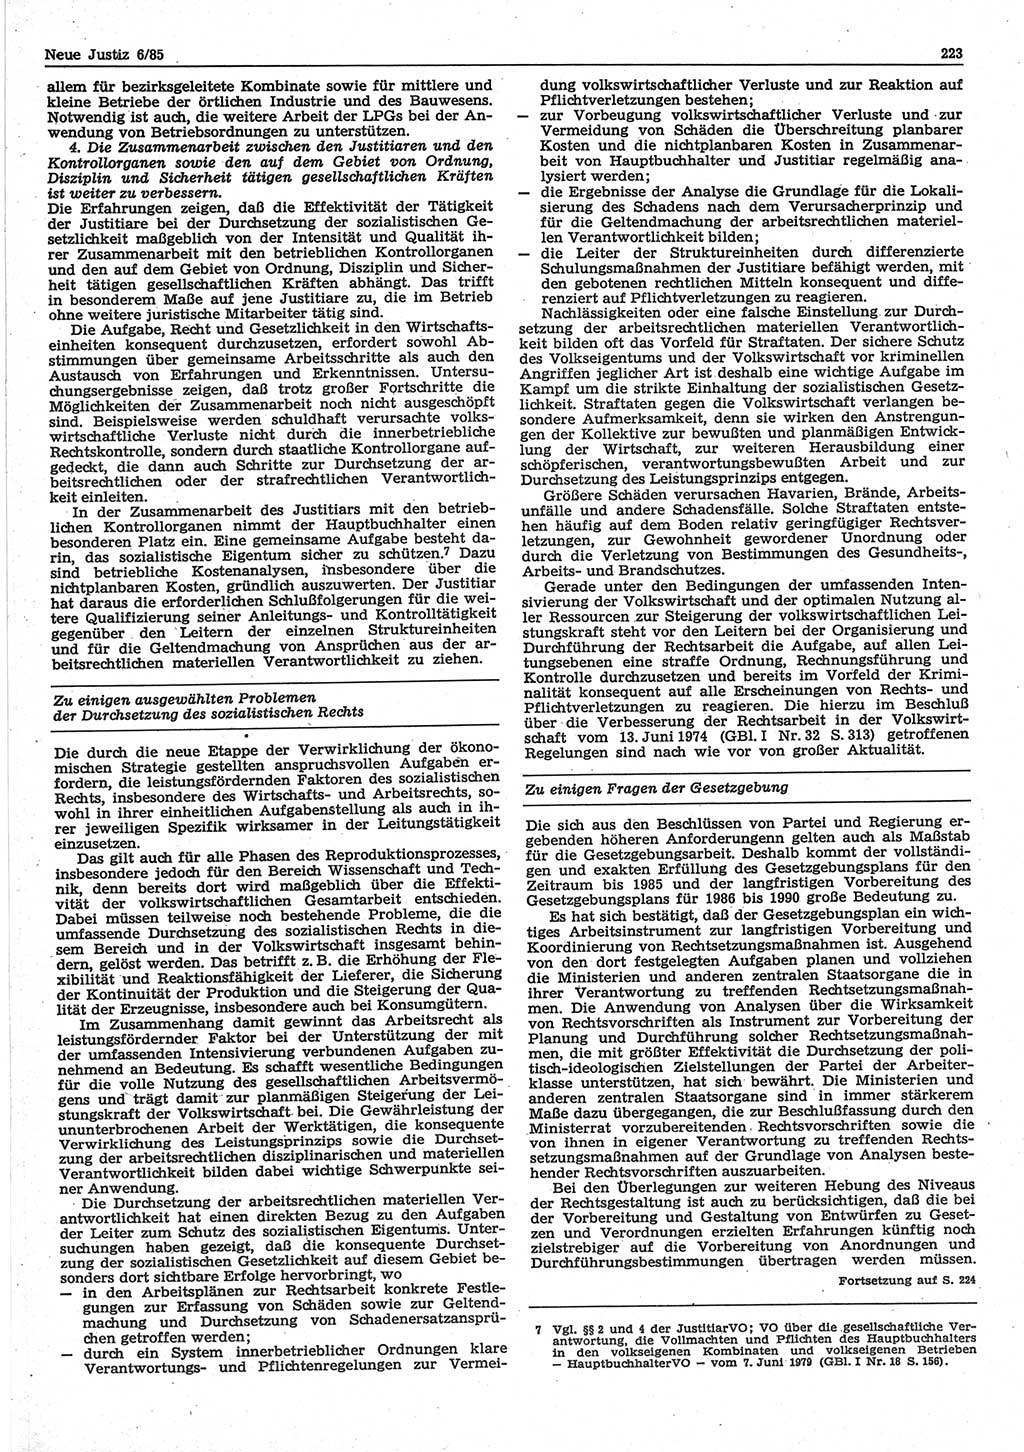 Neue Justiz (NJ), Zeitschrift für sozialistisches Recht und Gesetzlichkeit [Deutsche Demokratische Republik (DDR)], 39. Jahrgang 1985, Seite 223 (NJ DDR 1985, S. 223)